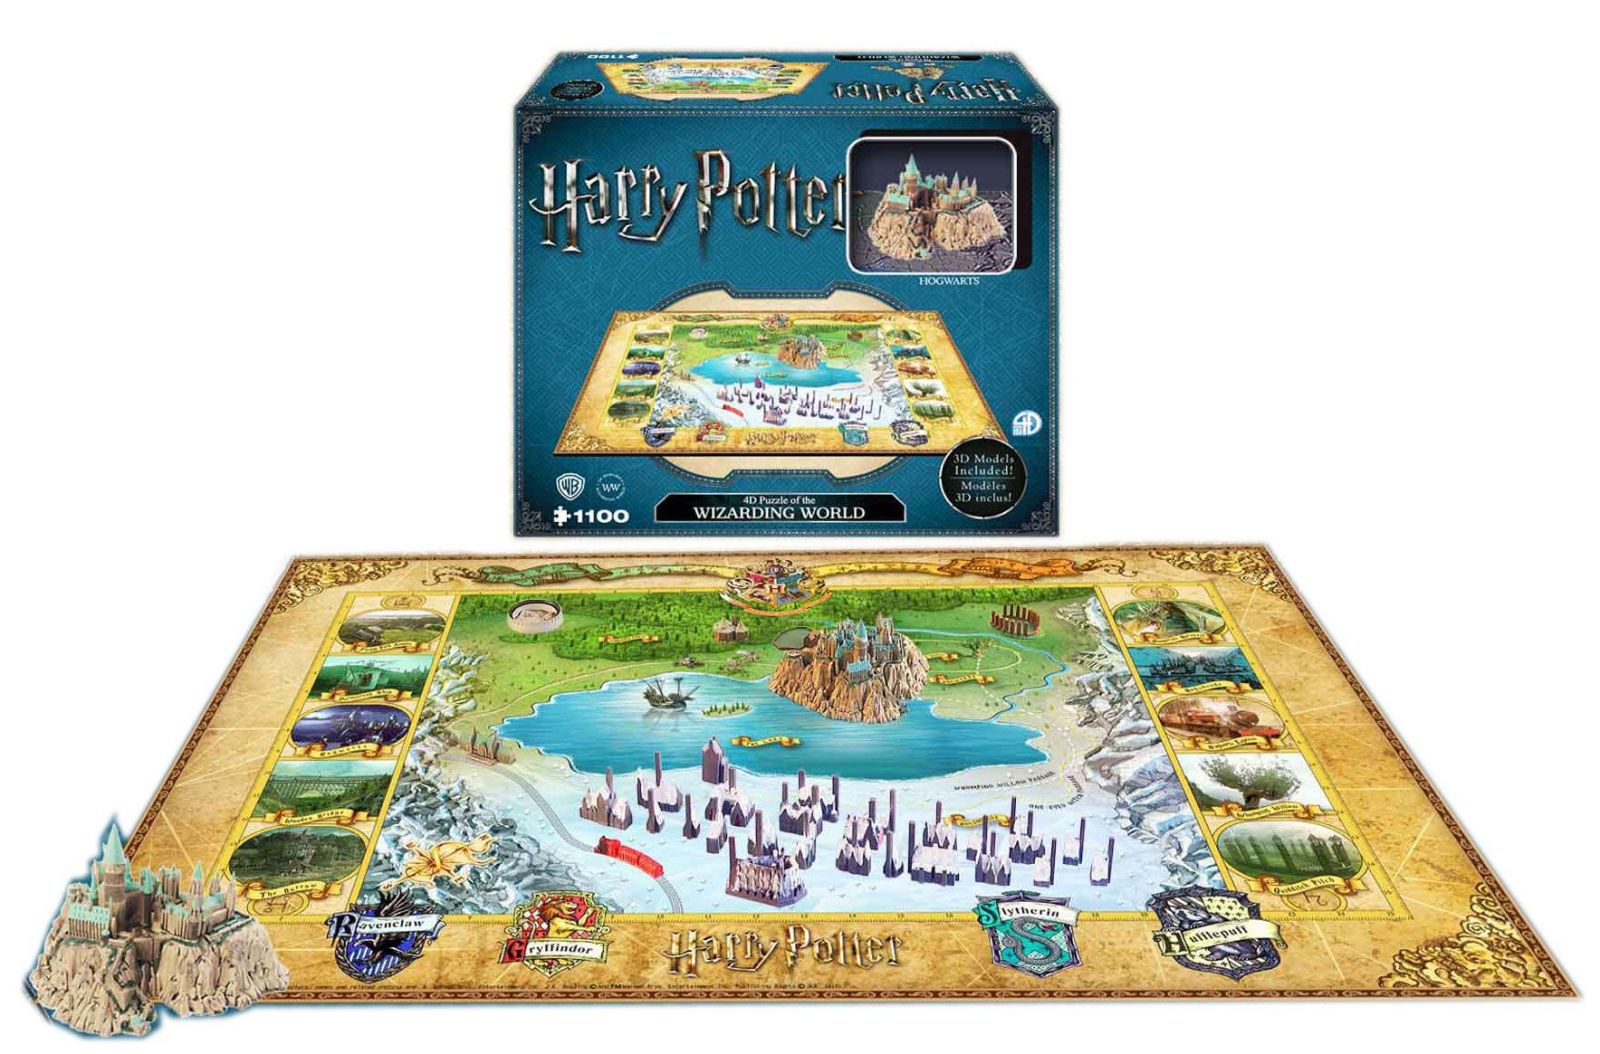 Harry Potter 4D Large Puzzle The Wizarding World (800 pieces) 4D Cityscape